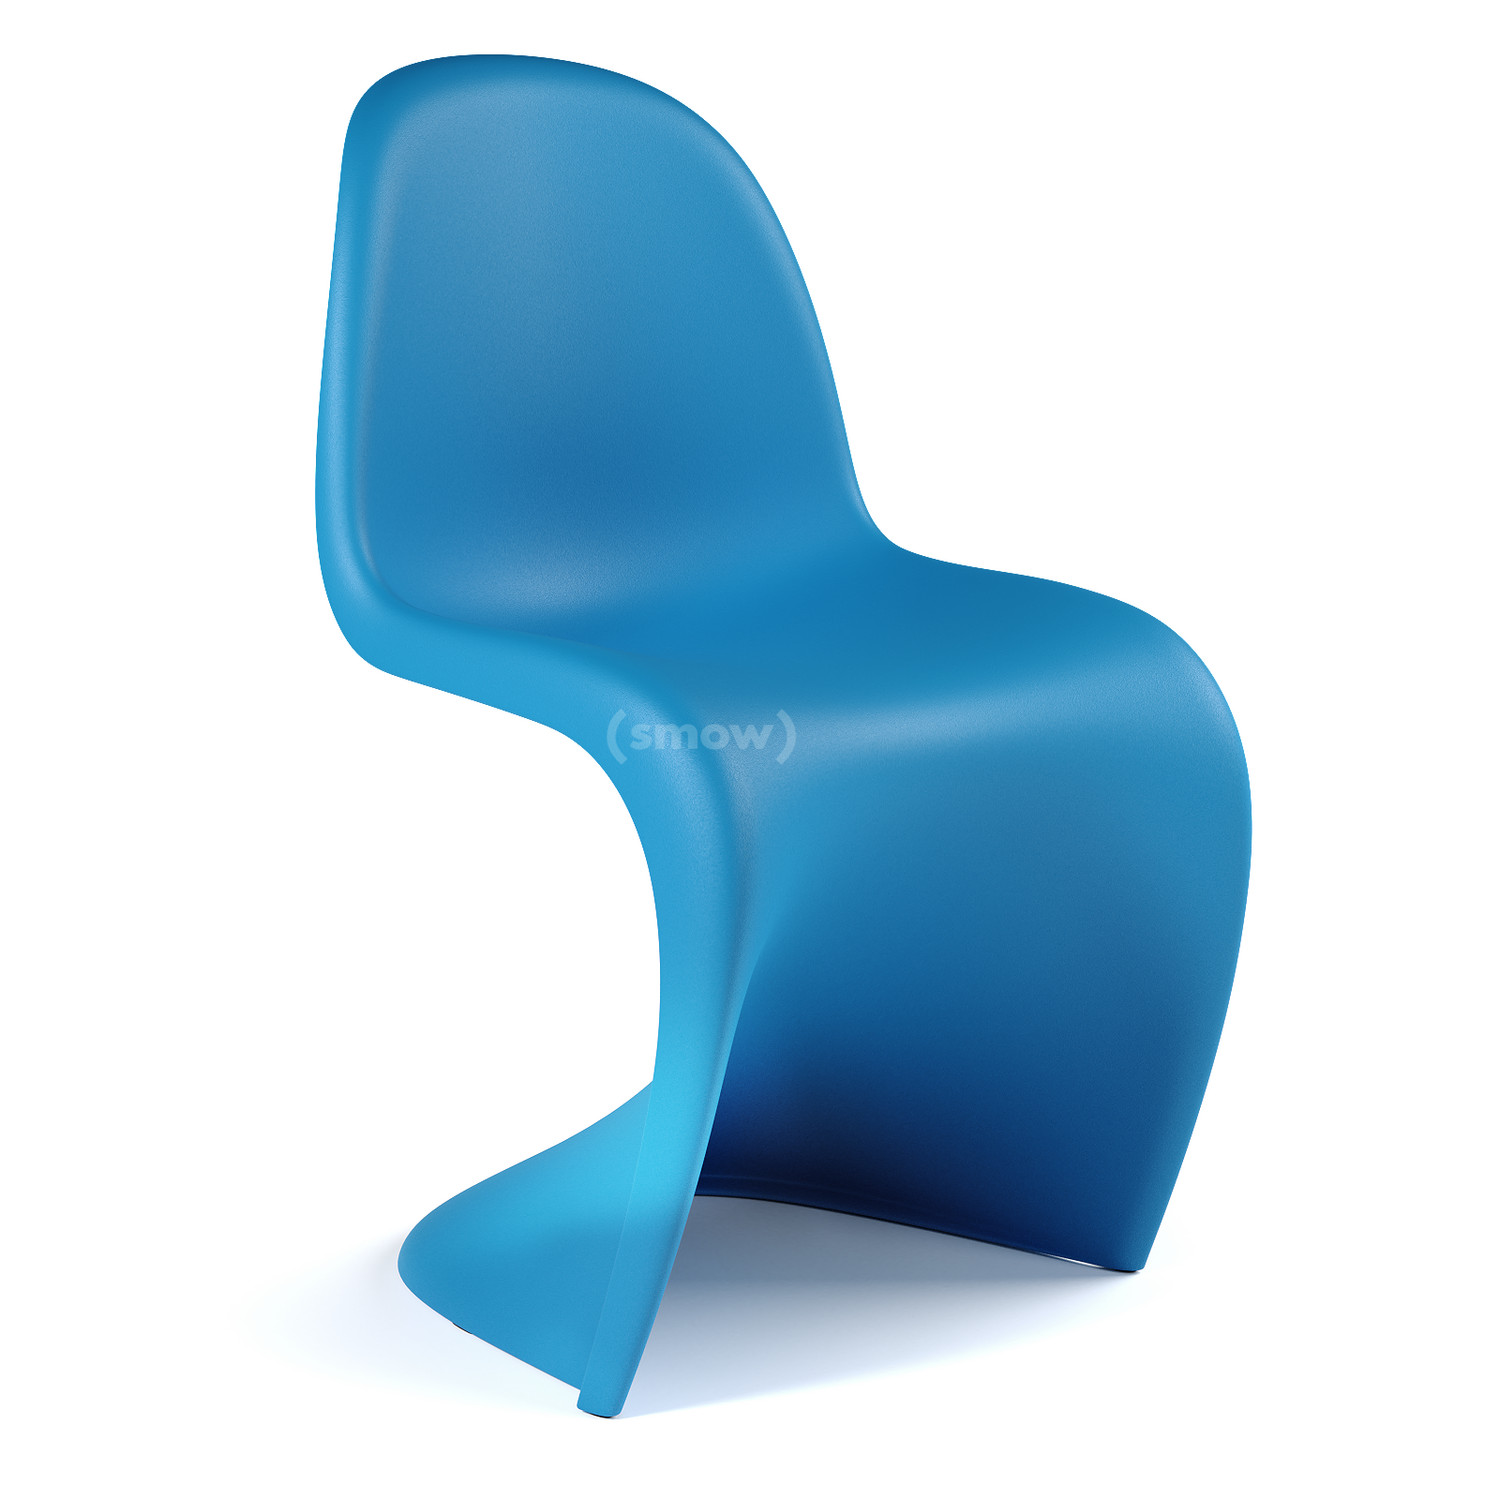 Vitra Panton Chair, Glacier blue by Verner Panton, 1999 - Designer by smow.com